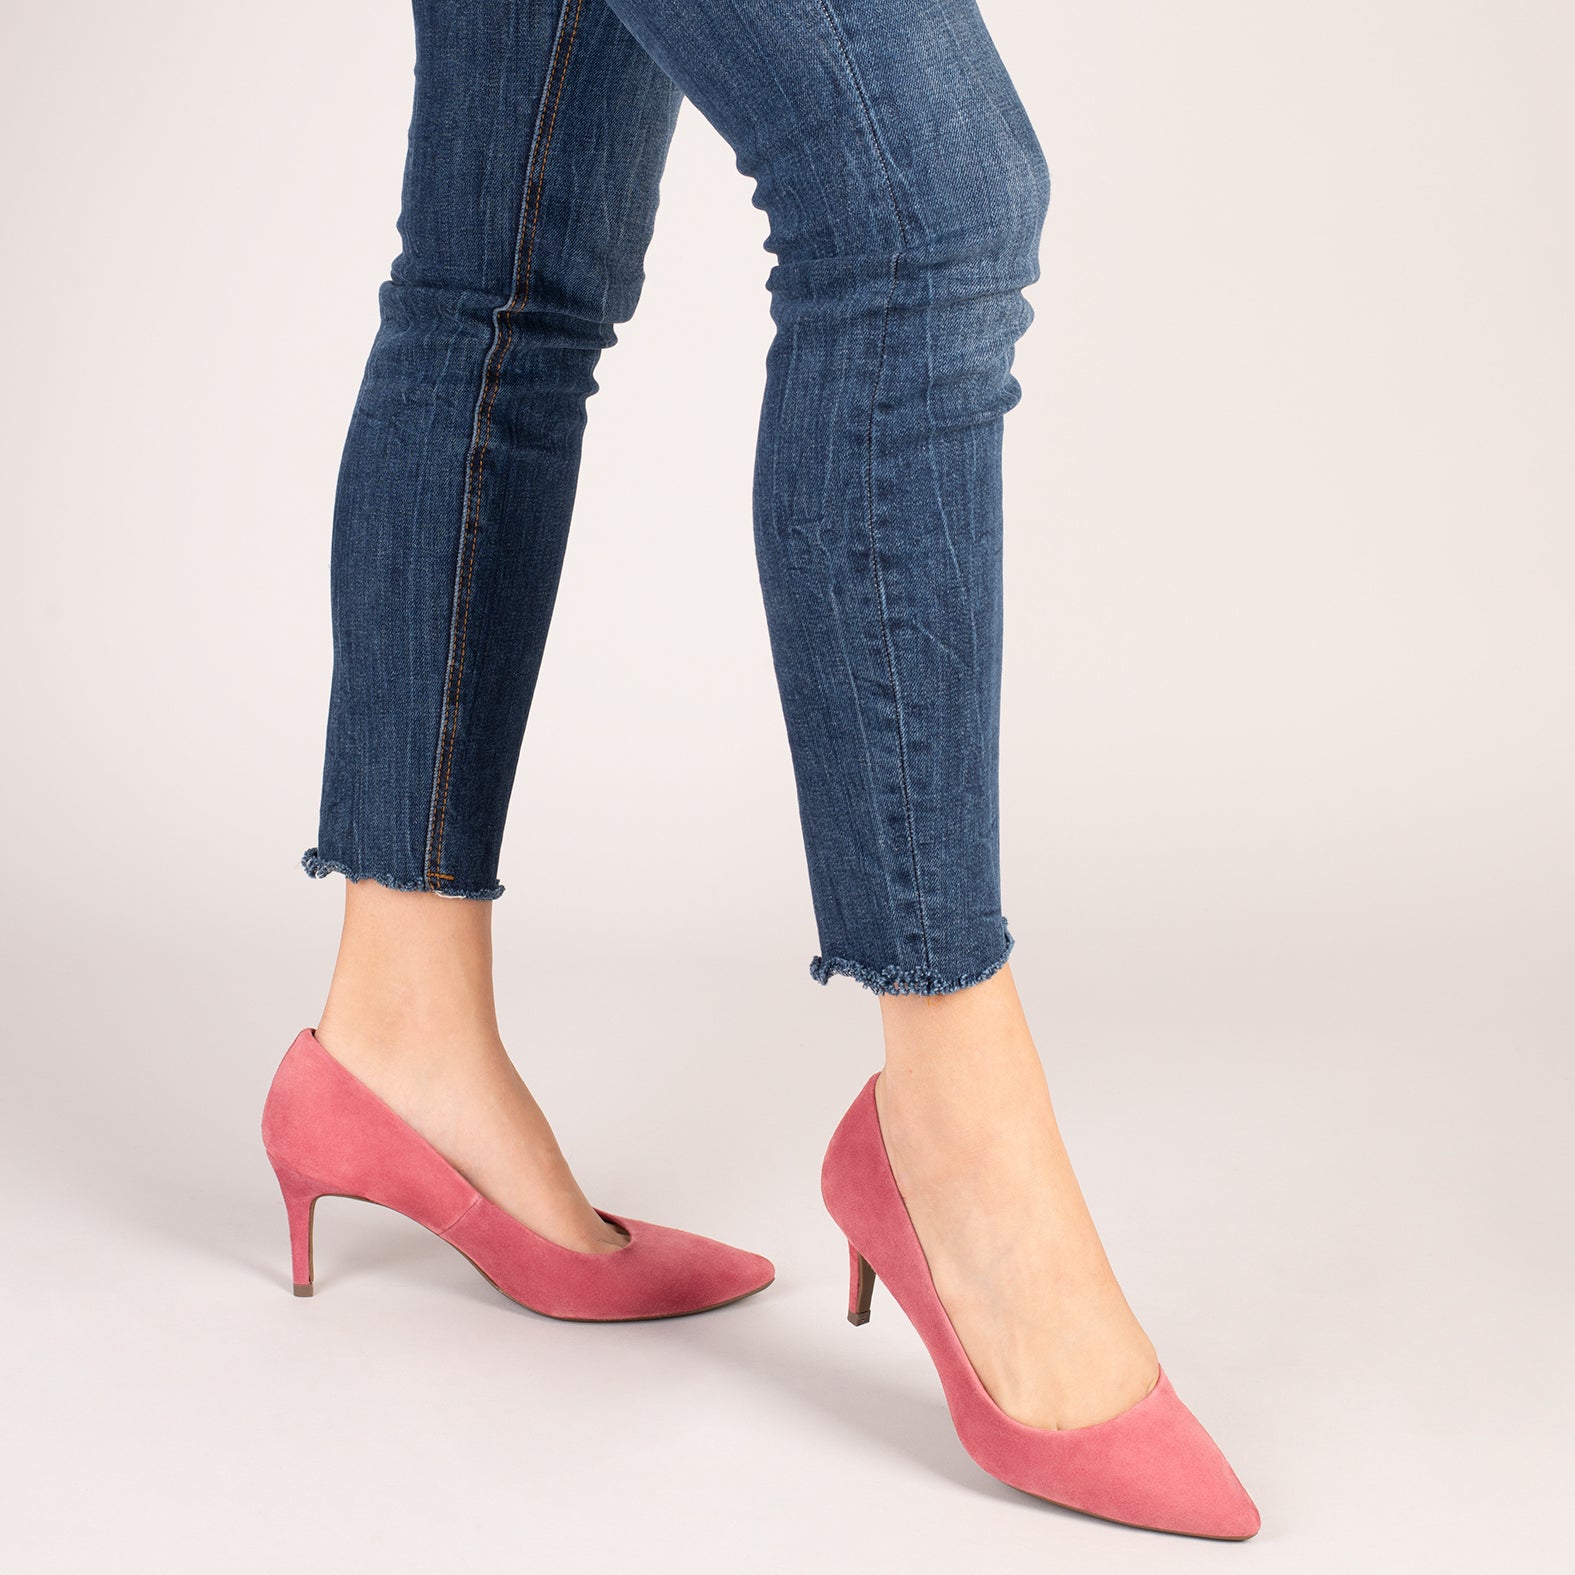 STILETTO – PINK stiletto heels